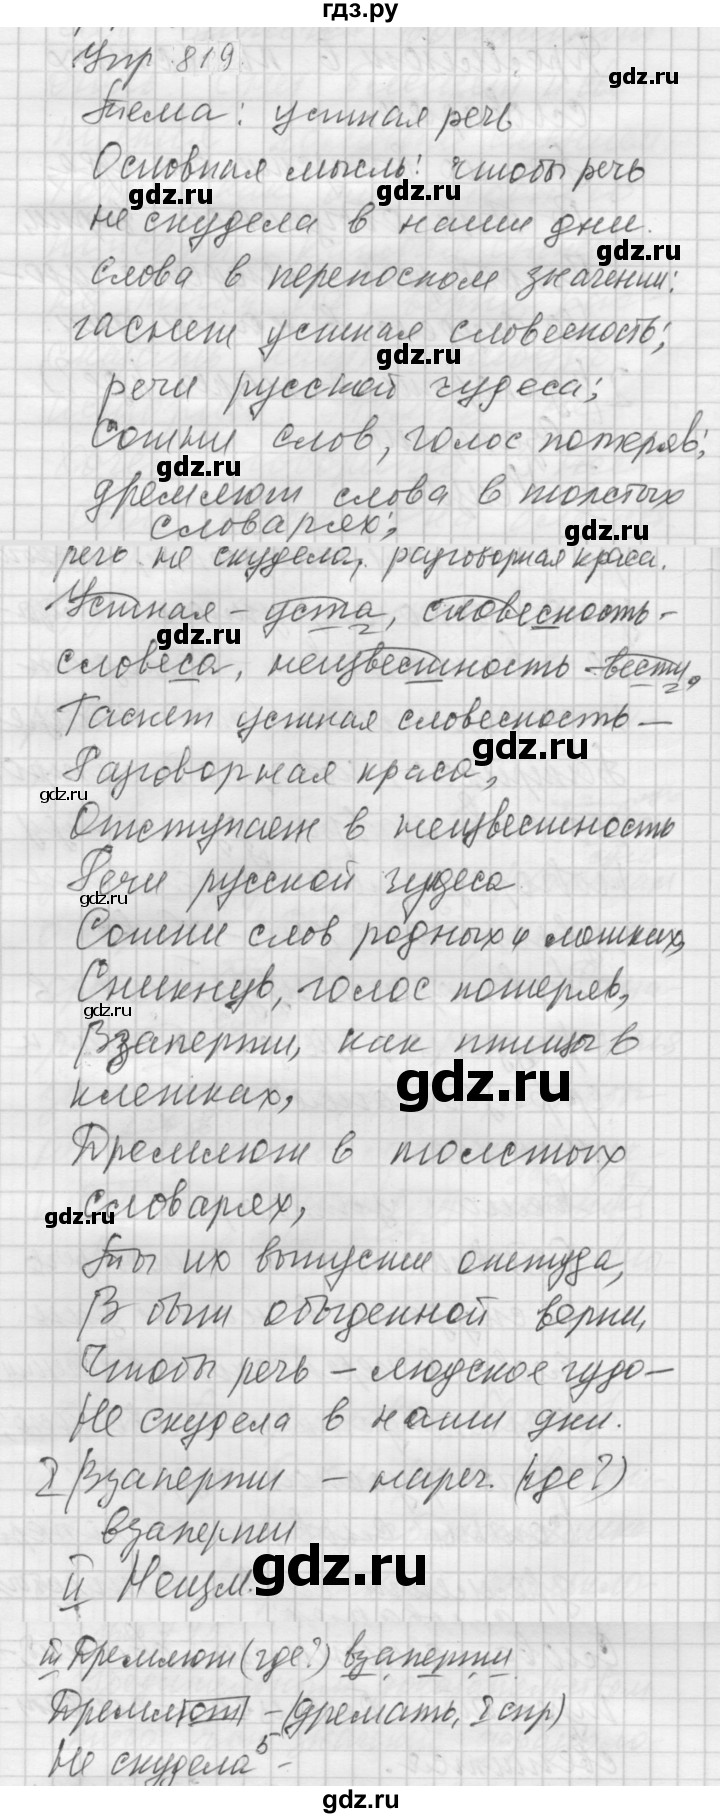 ГДЗ Упражнение 819 Русский Язык 5 Класс Учебник, Практика Купалова.